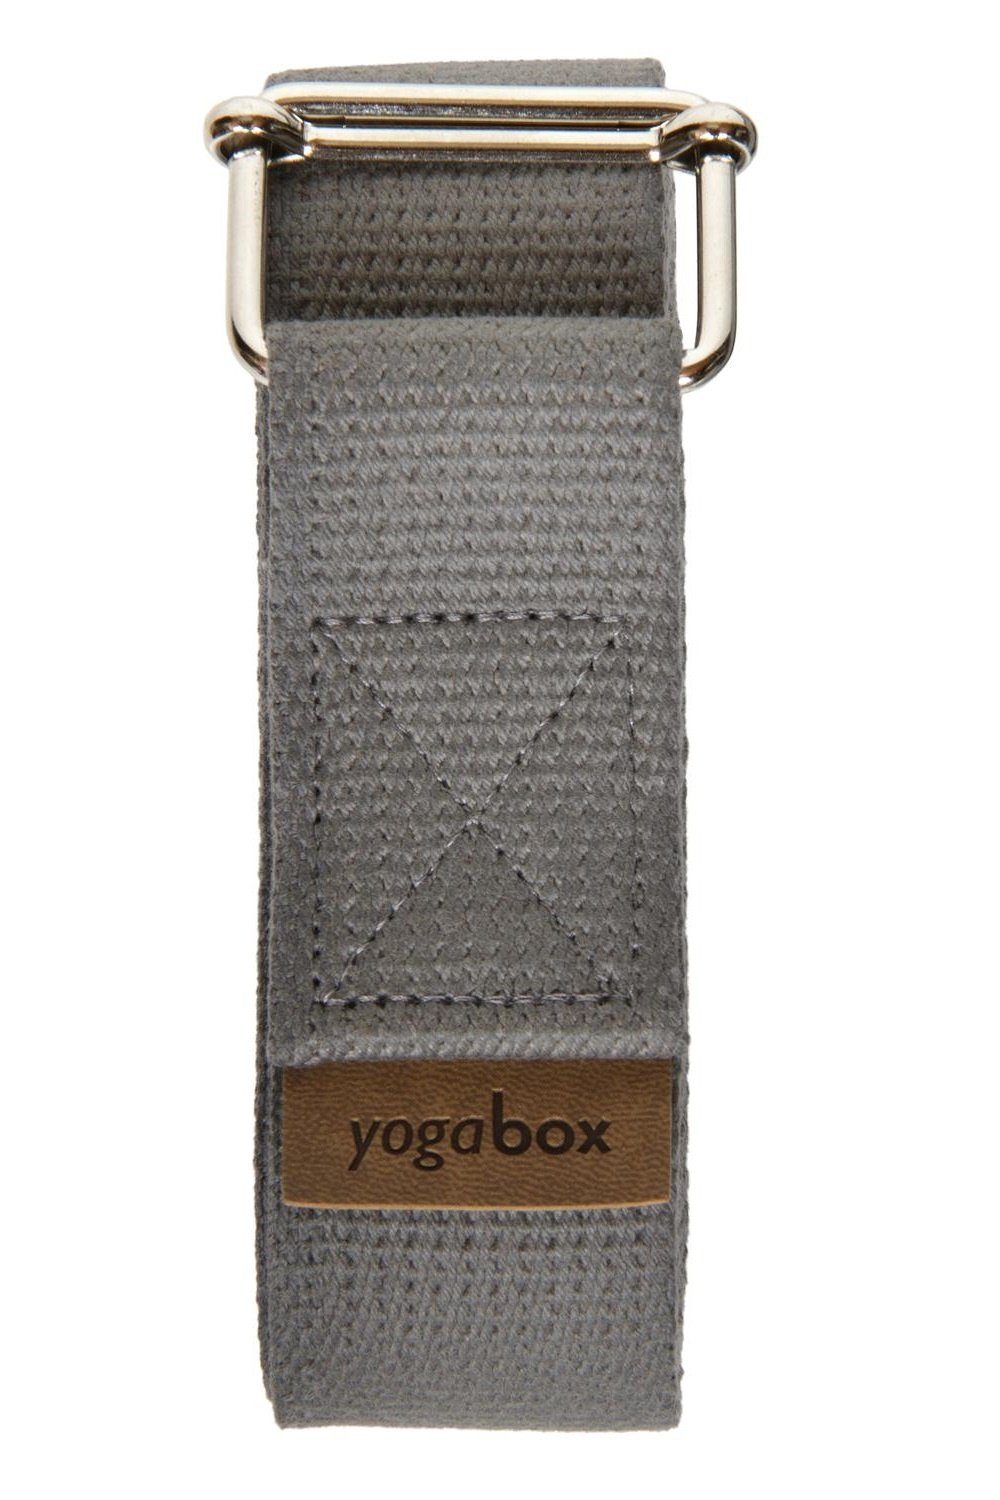 hergestellt yogabox grau Schiebeverschluss, Metall Deutschland mit Yogagurt in